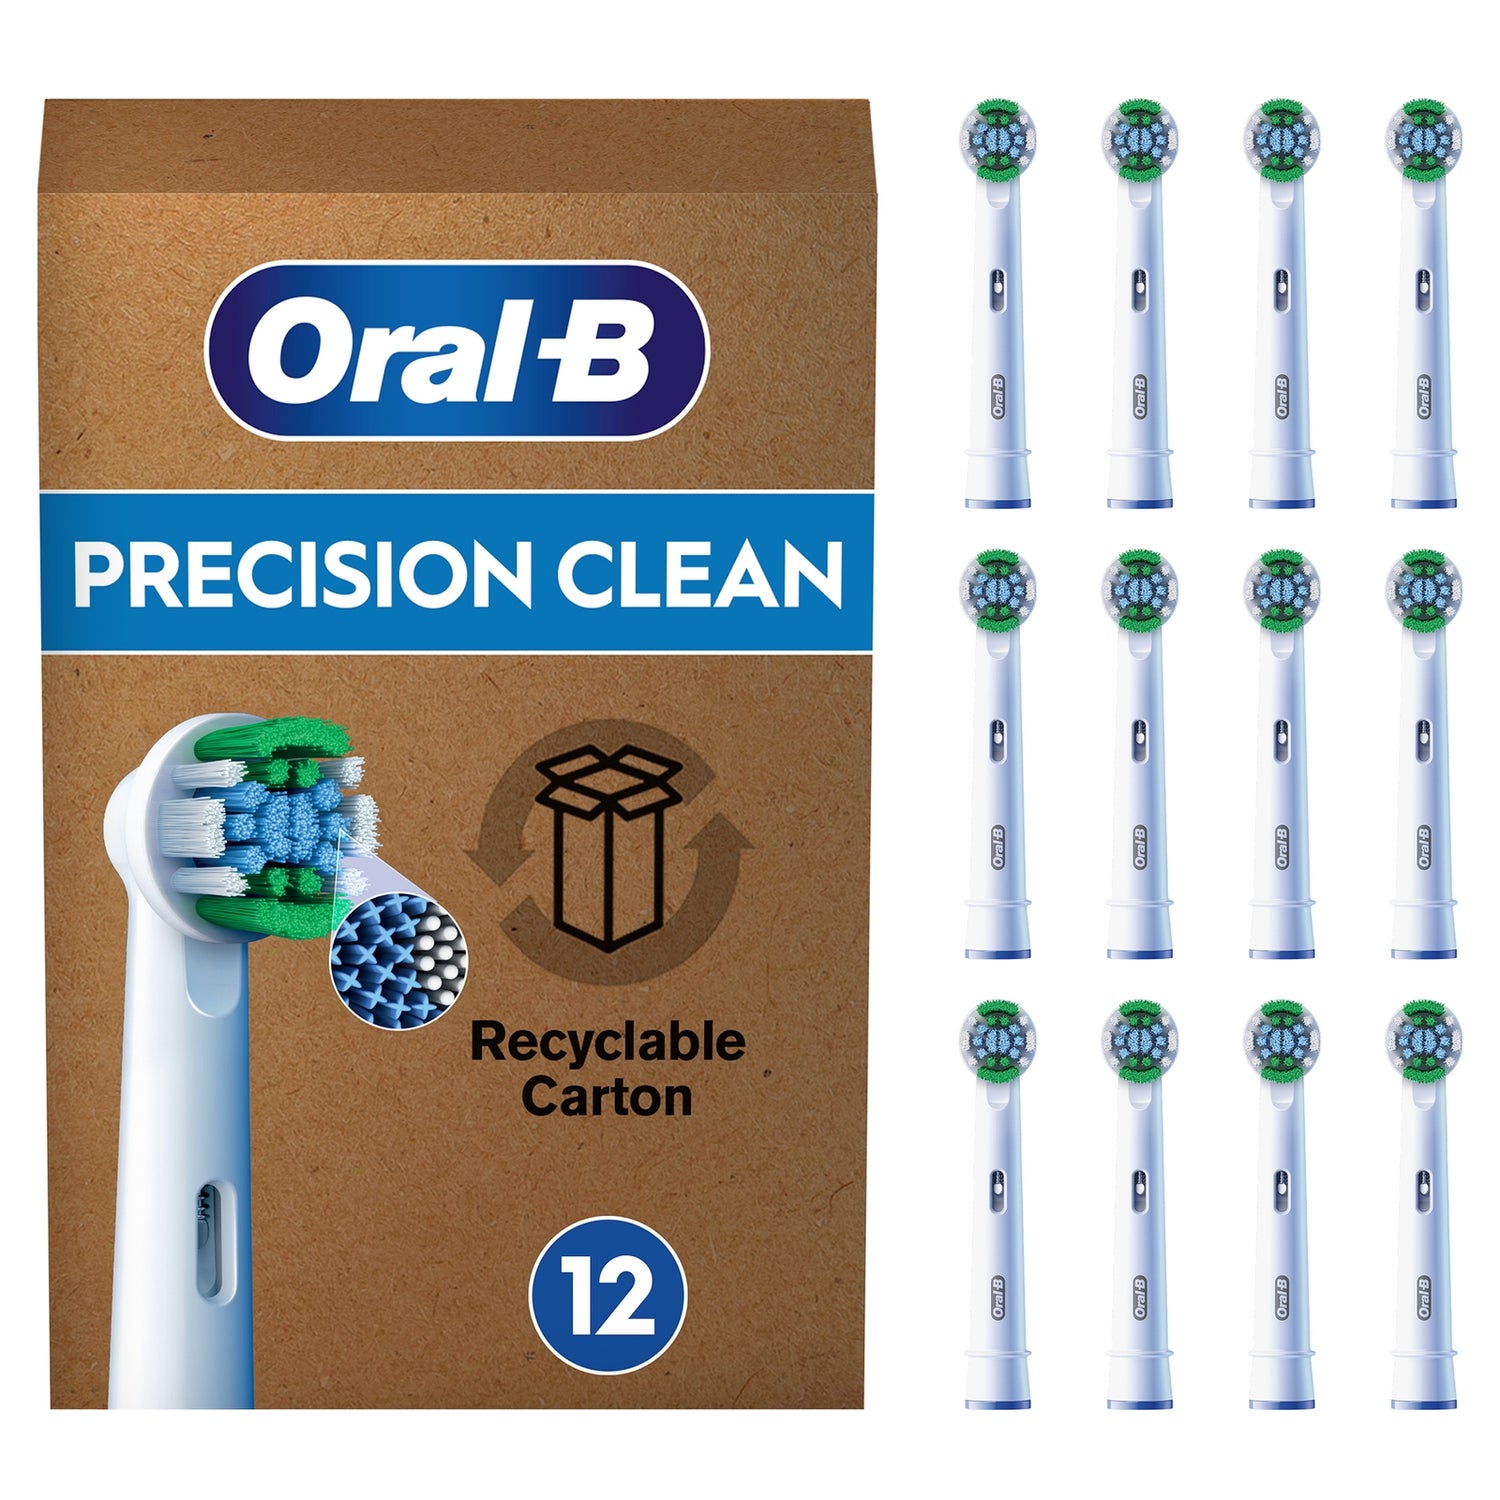 Aufsteckbürsten für Oral-B 12 briefkastenfähige Stück Precision Borsten, X-förmige Verpackung, | Clean DE elektrische Pro Oral-B Zahnbürste,